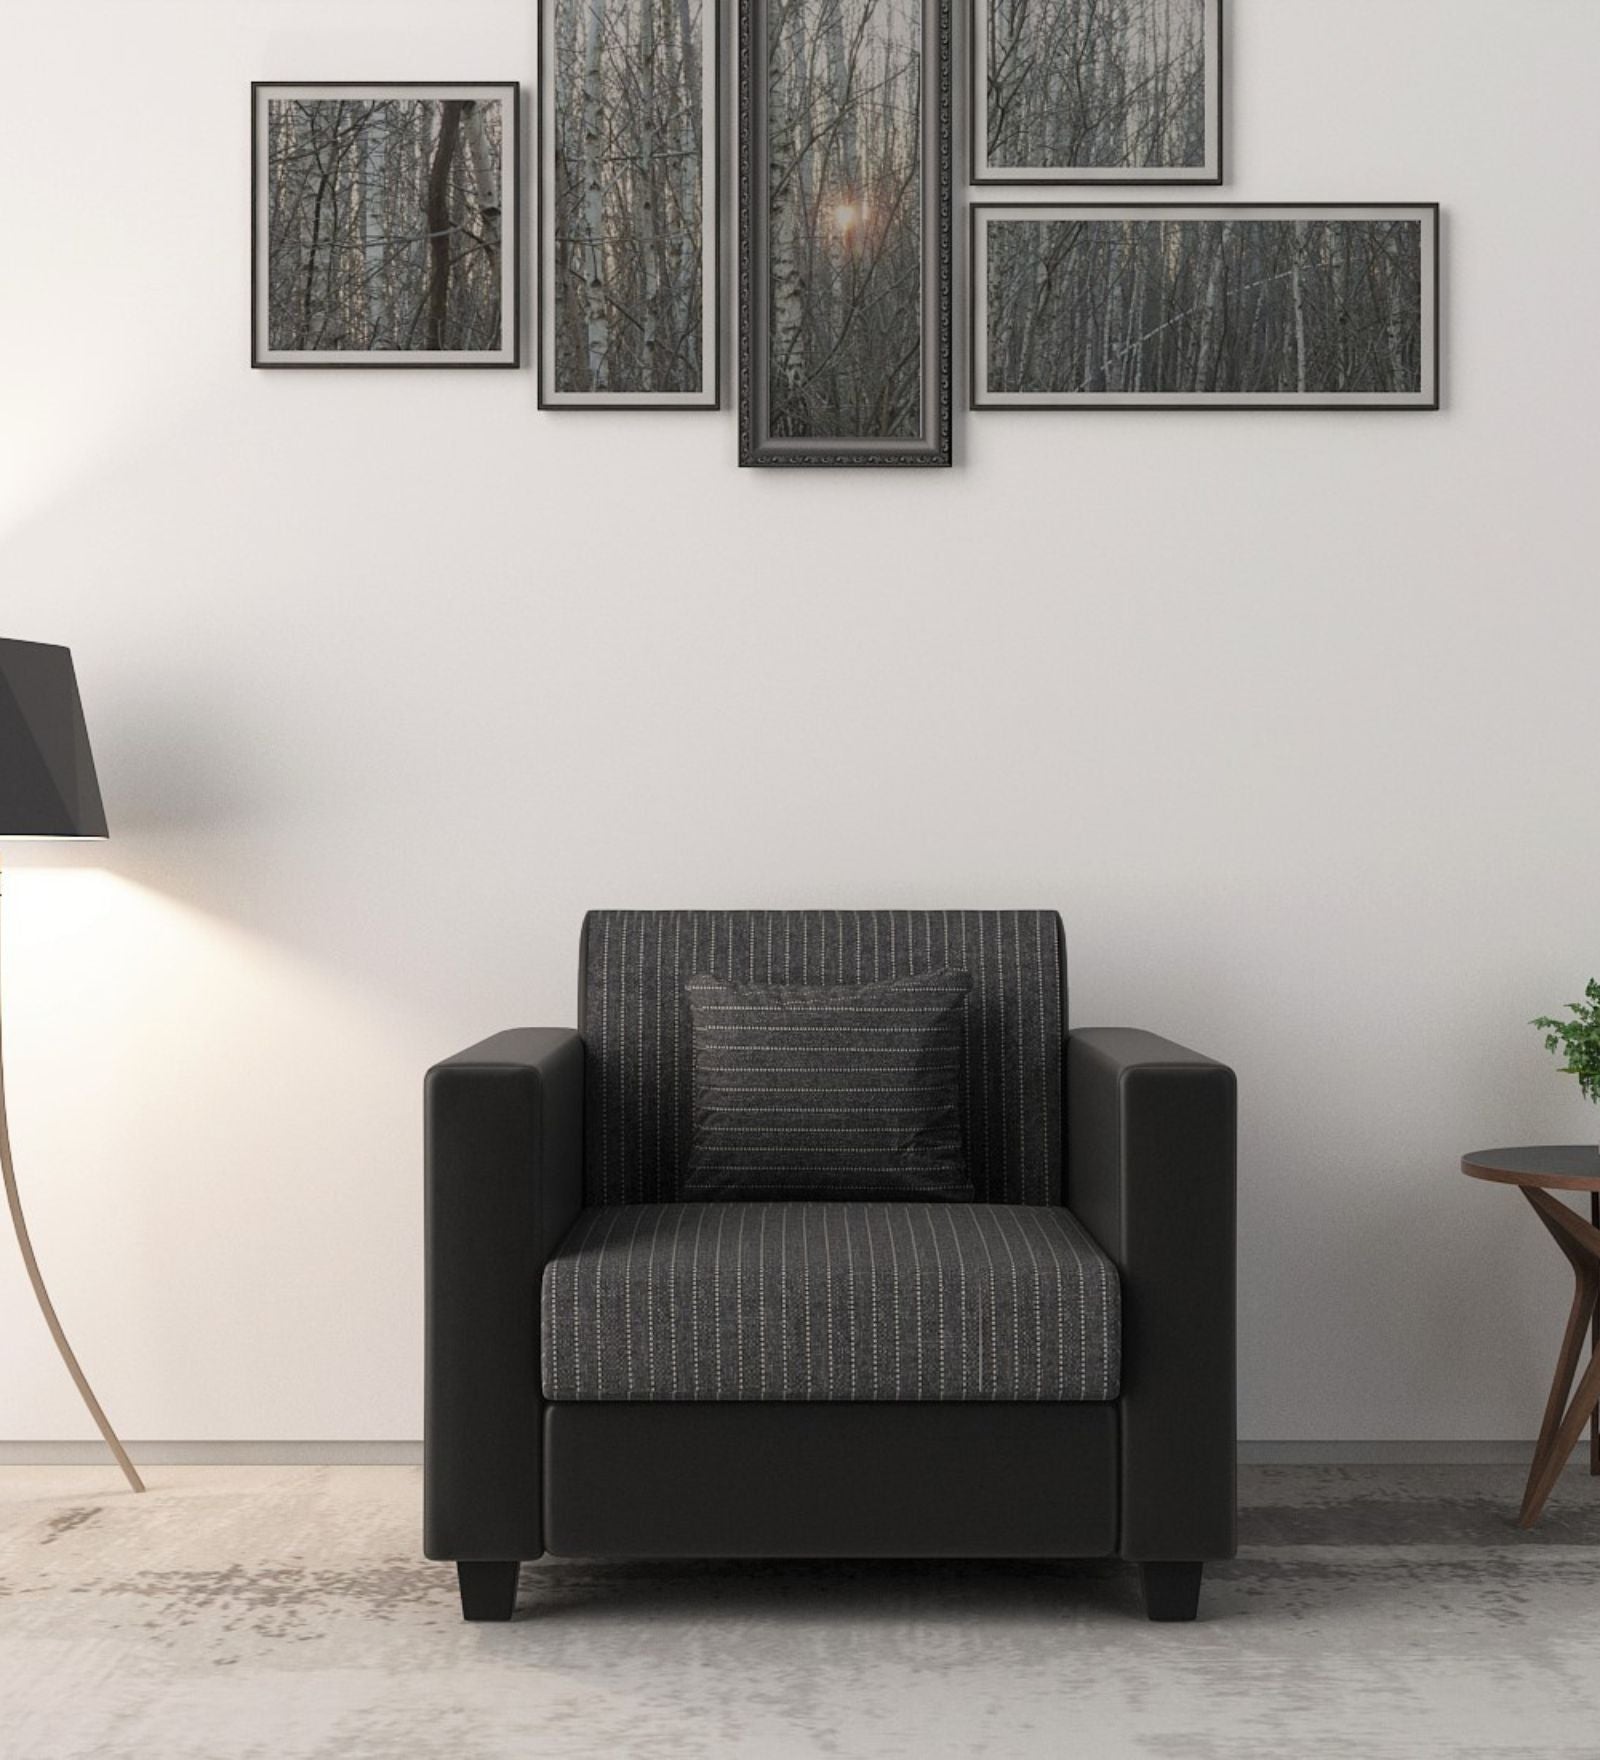 Baley Fabric 1 Seater Sofa in Lama Black Colour